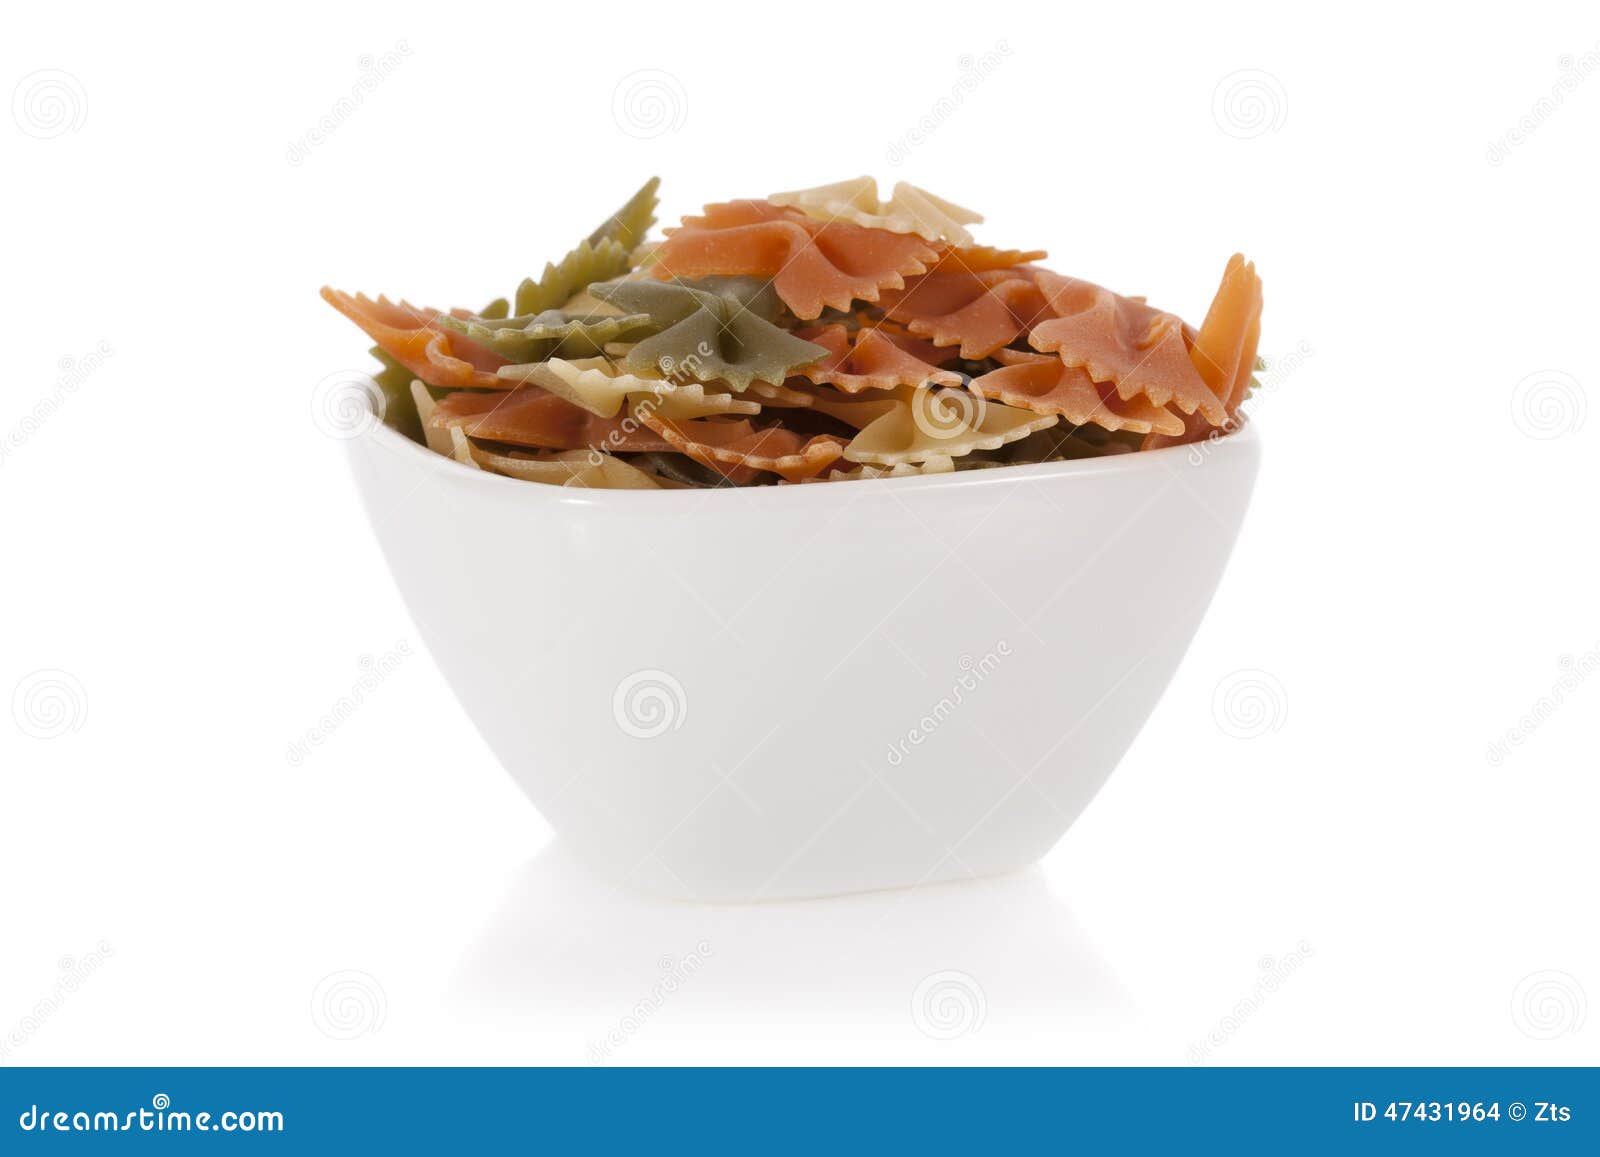 tricolore farfalle pasta in a bowl